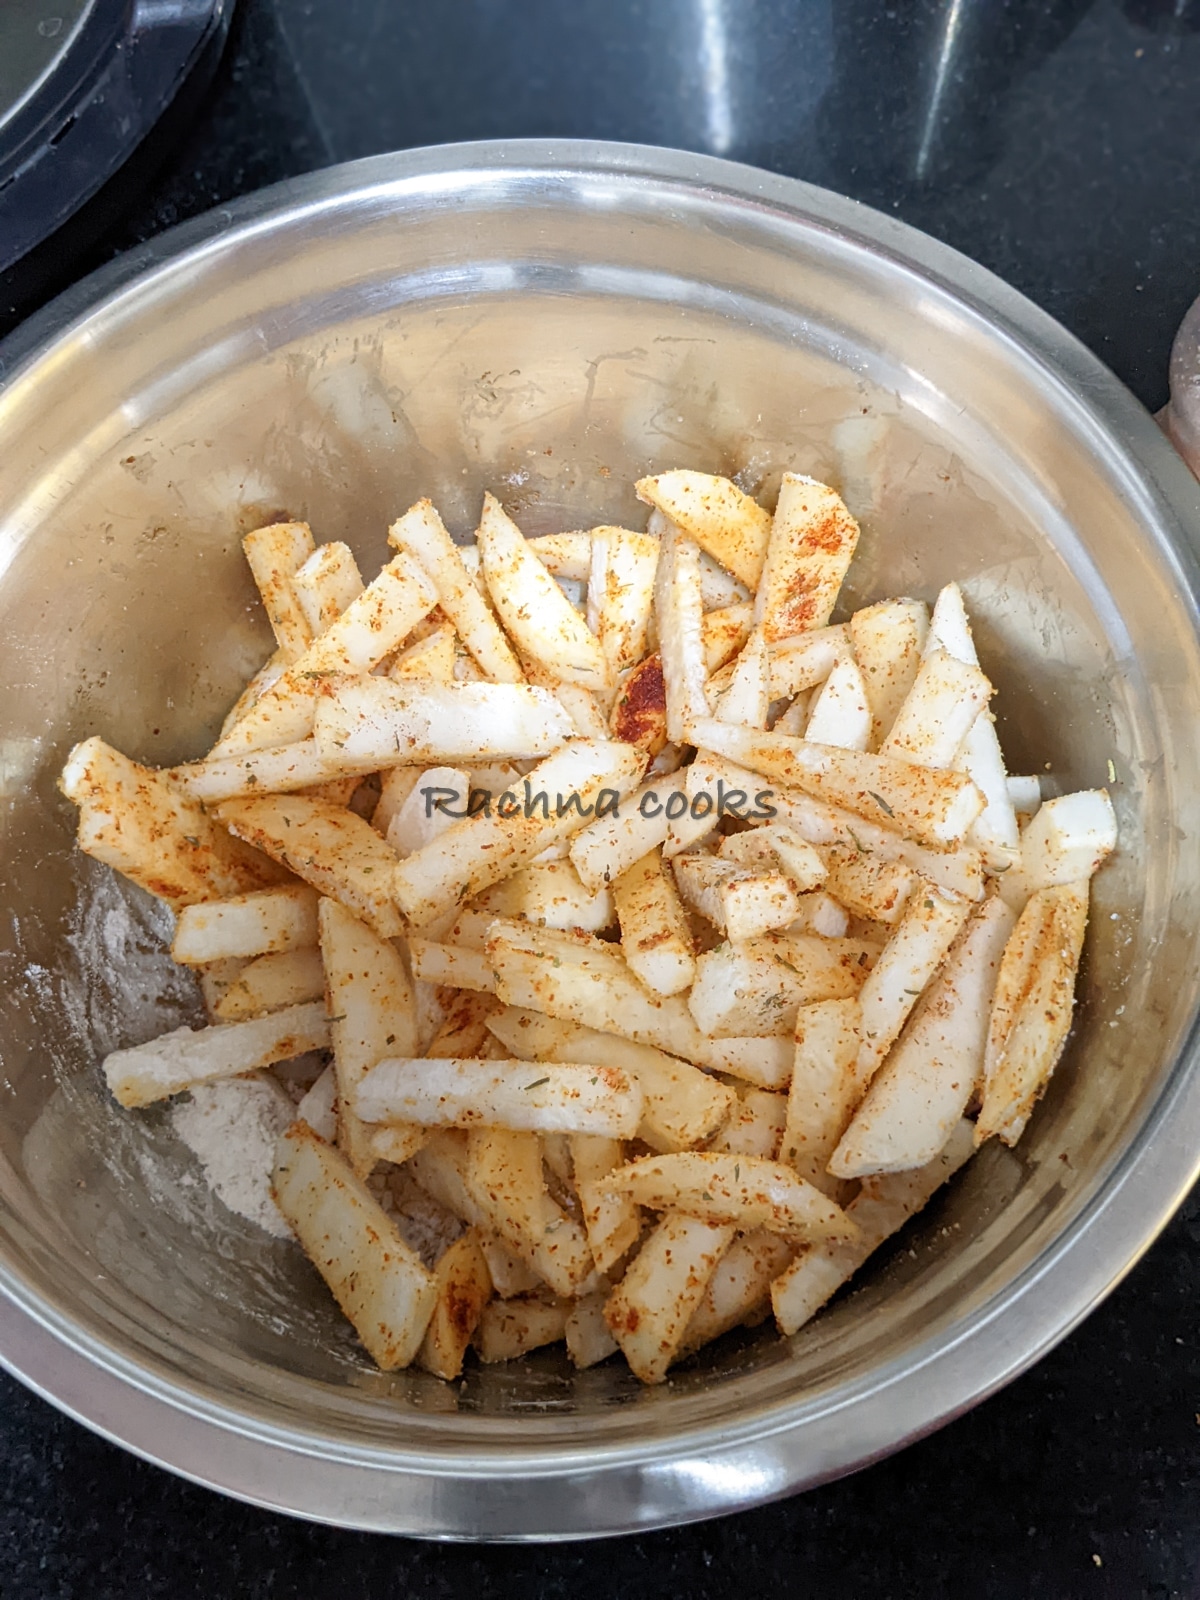 Turnip fries in a steel bowl tossed with seasonings.